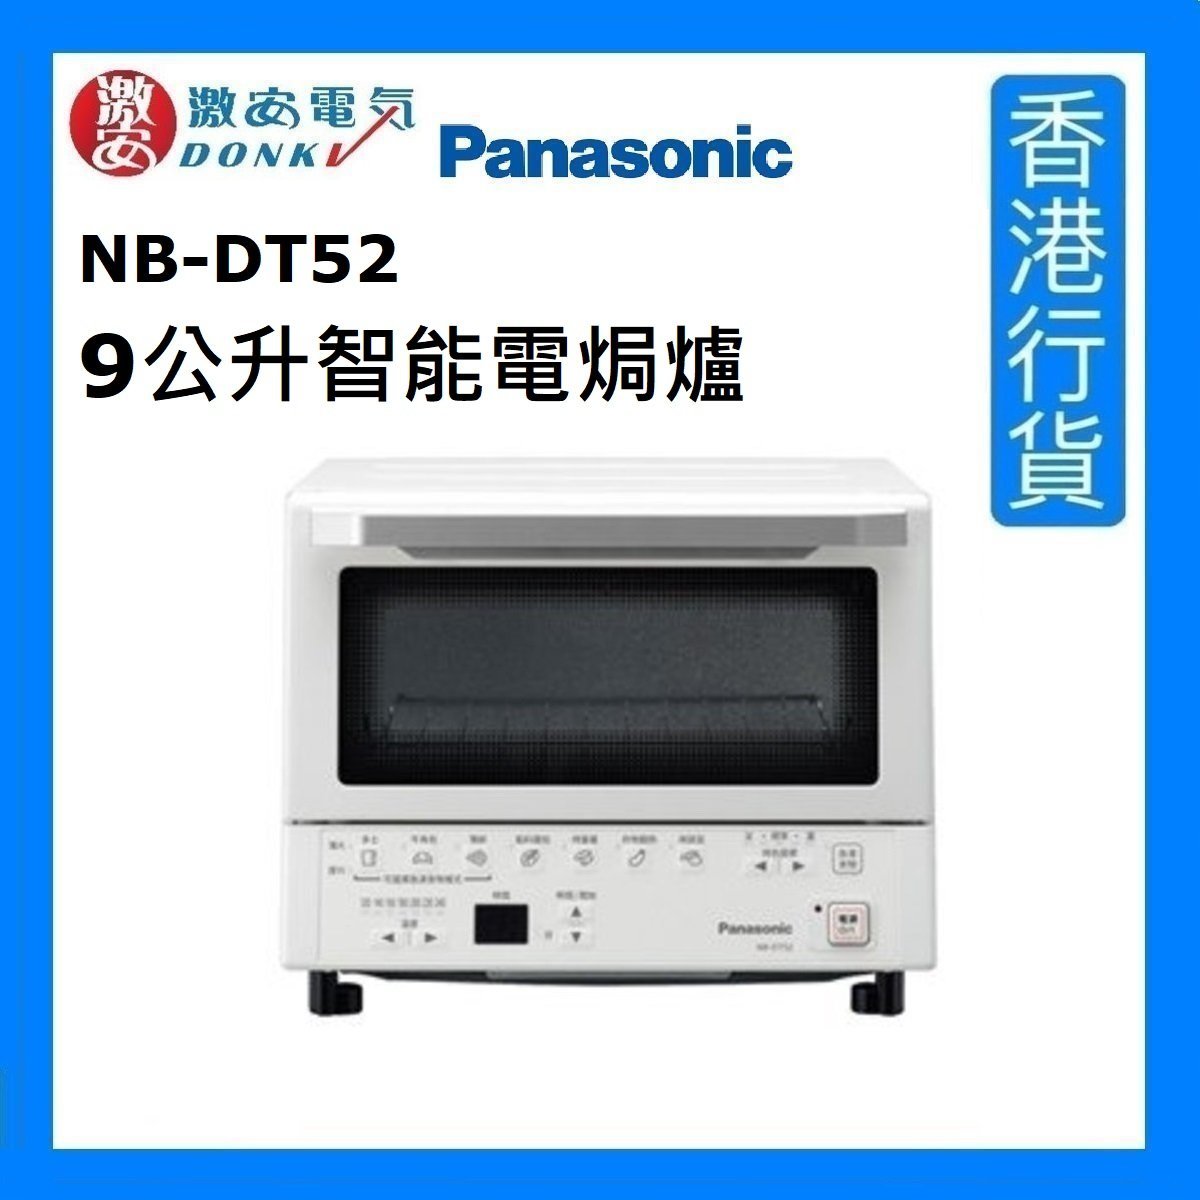 NB-DT52 9公升智能電焗爐 [香港行貨]